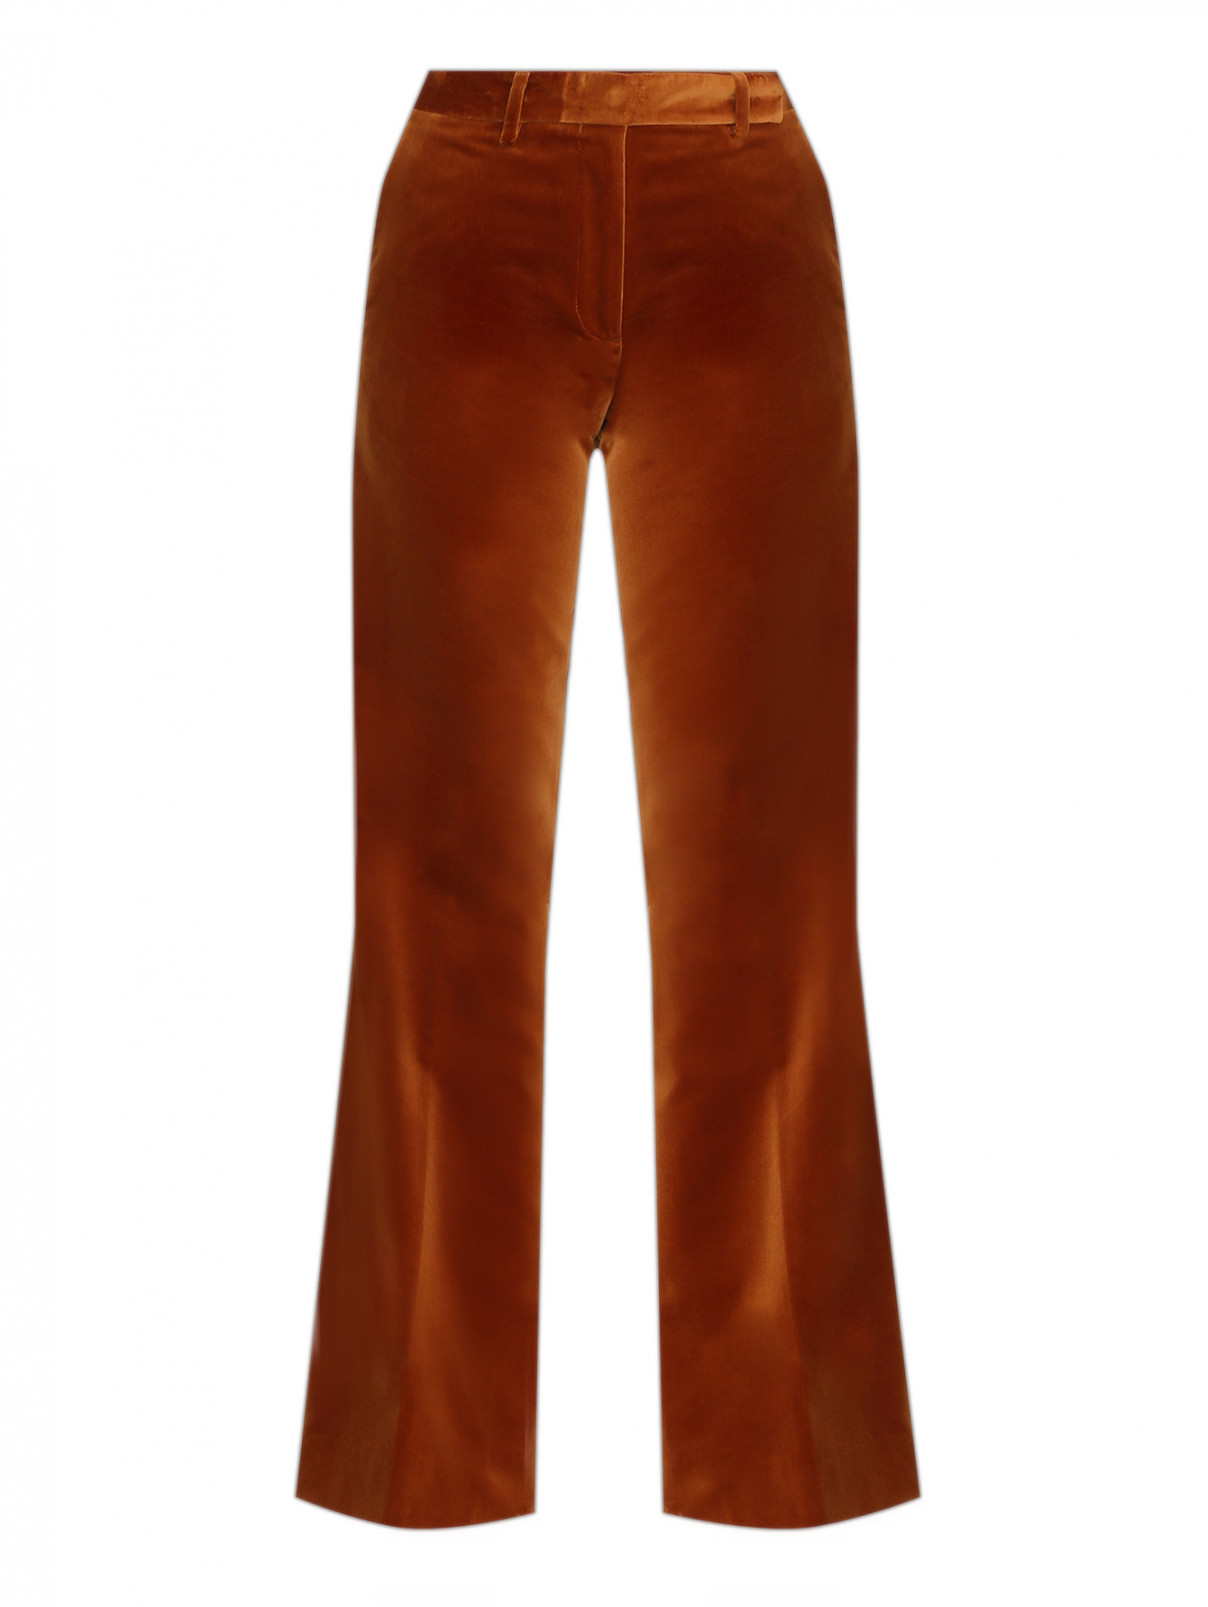 Расклешенные брюки из хлопка Paul Smith  –  Общий вид  – Цвет:  Коричневый